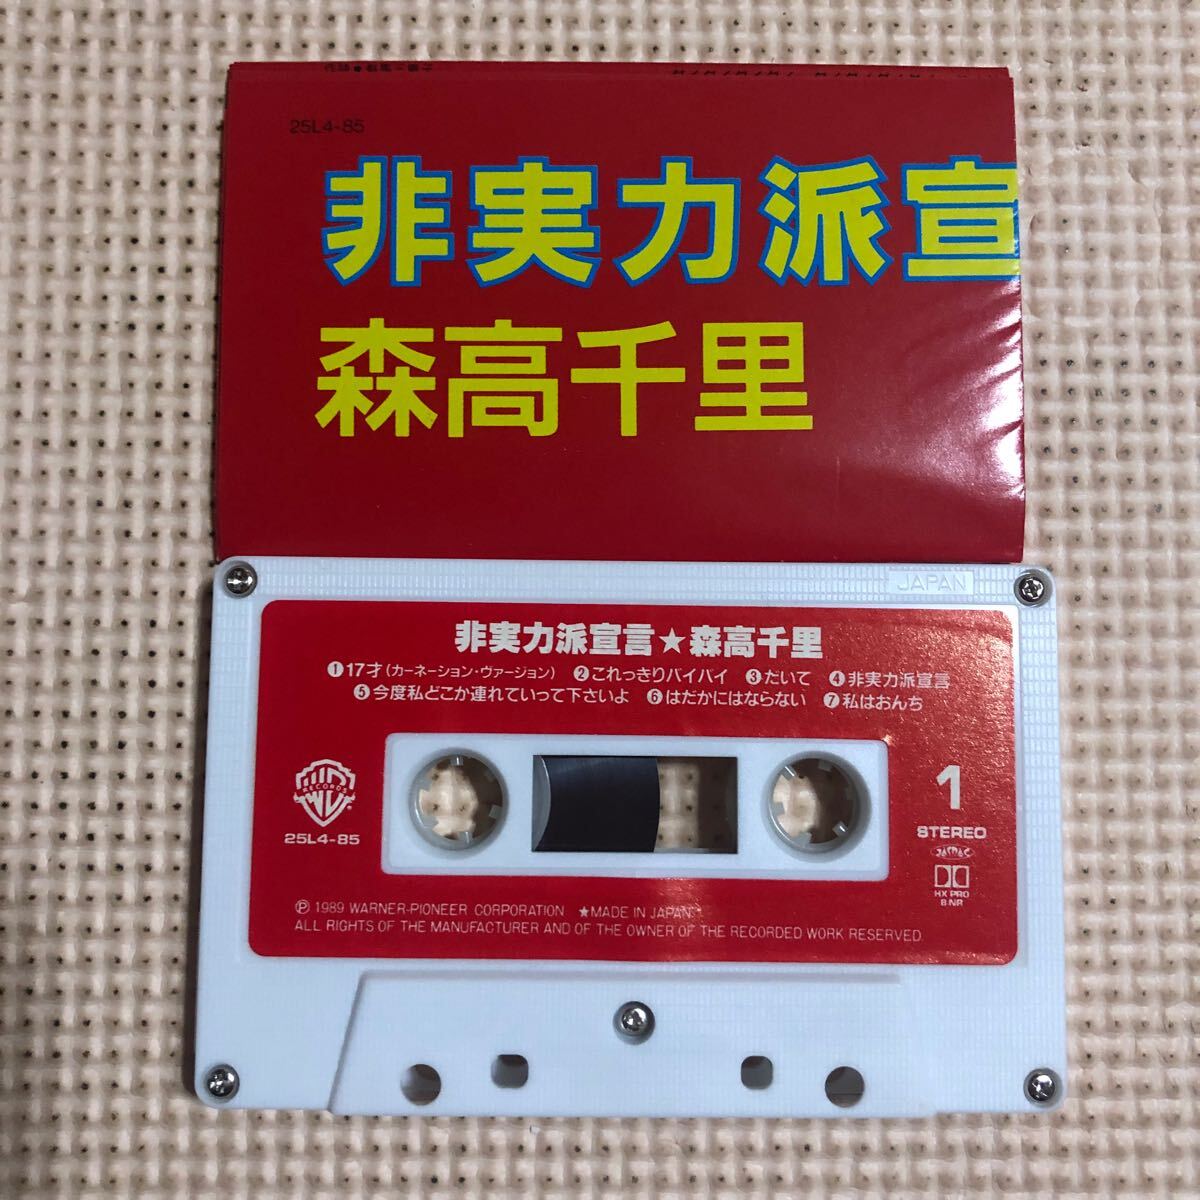  Moritaka Chisato не реальный сила ... записано в Японии кассетная лента ###